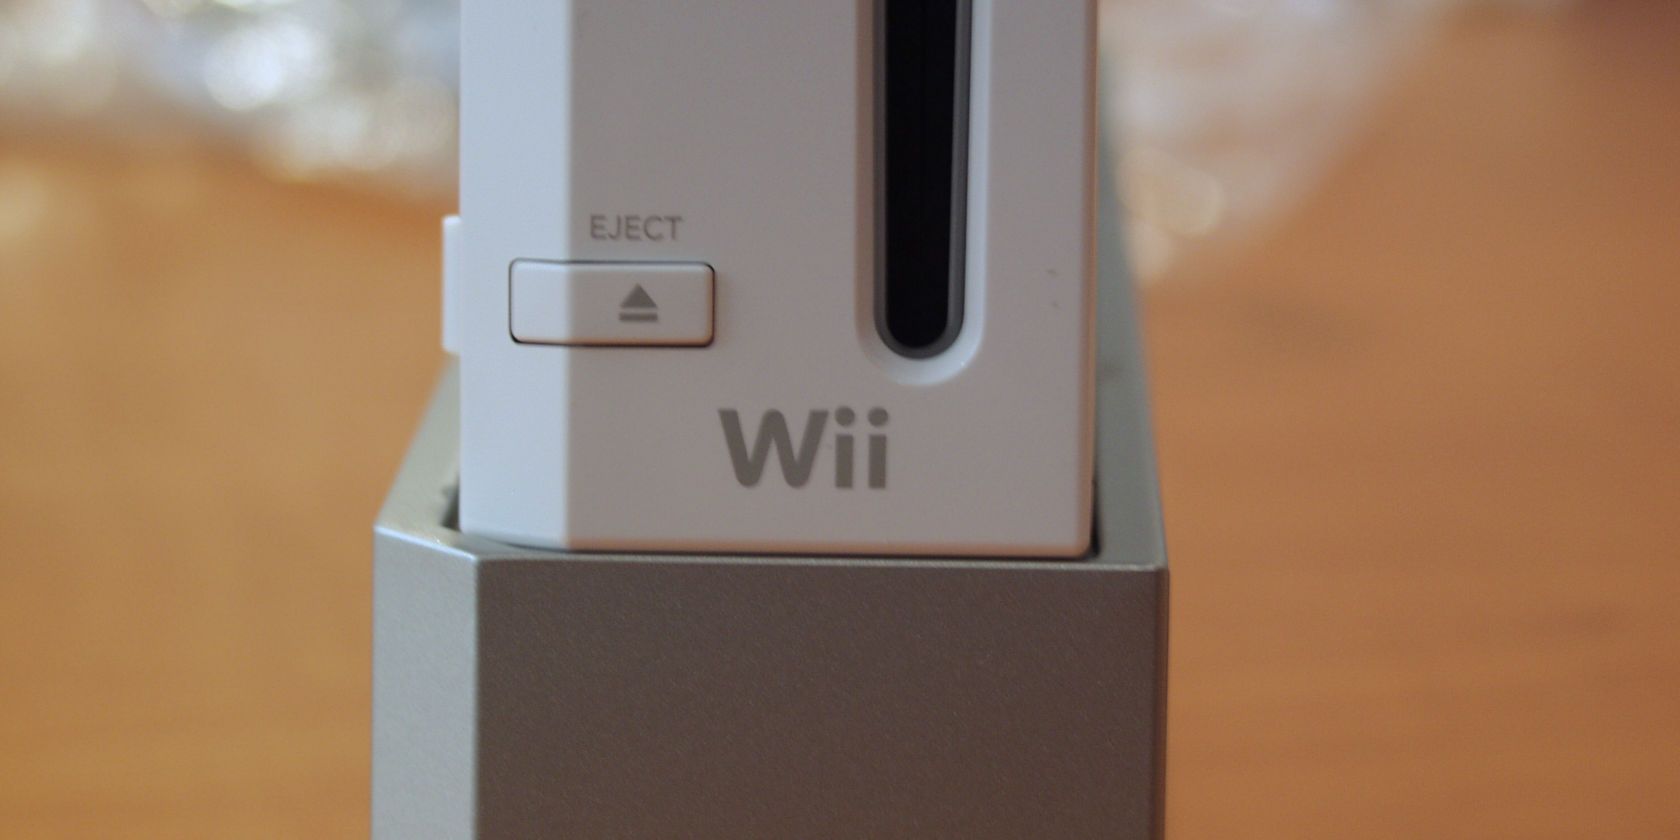 Wii non se conecta a wifi? Aquí tes unha solución fácil